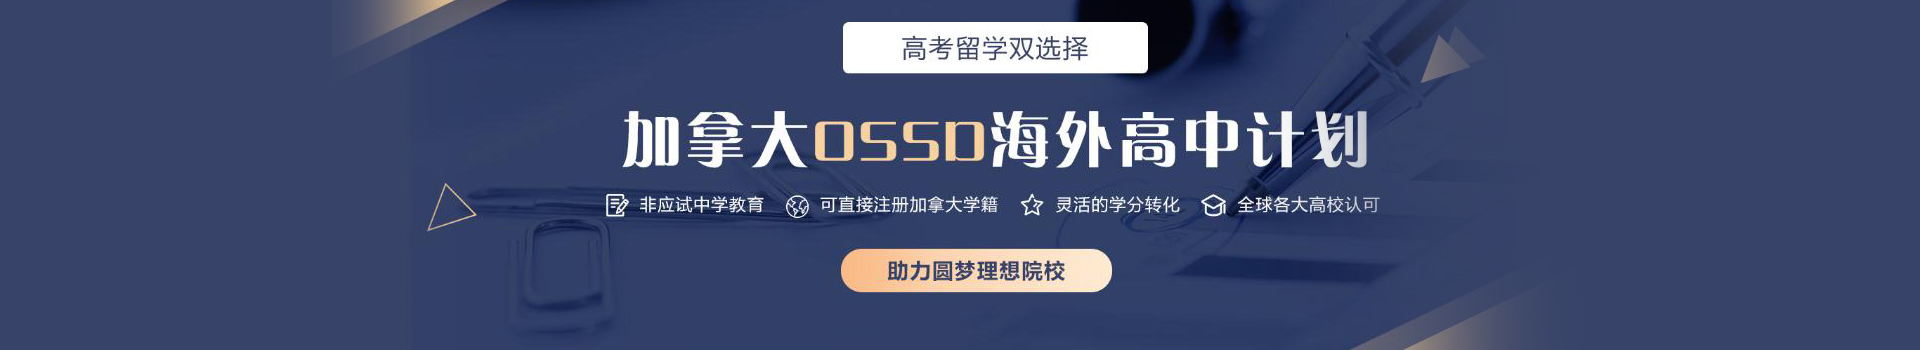 武汉新航道OSSD课程